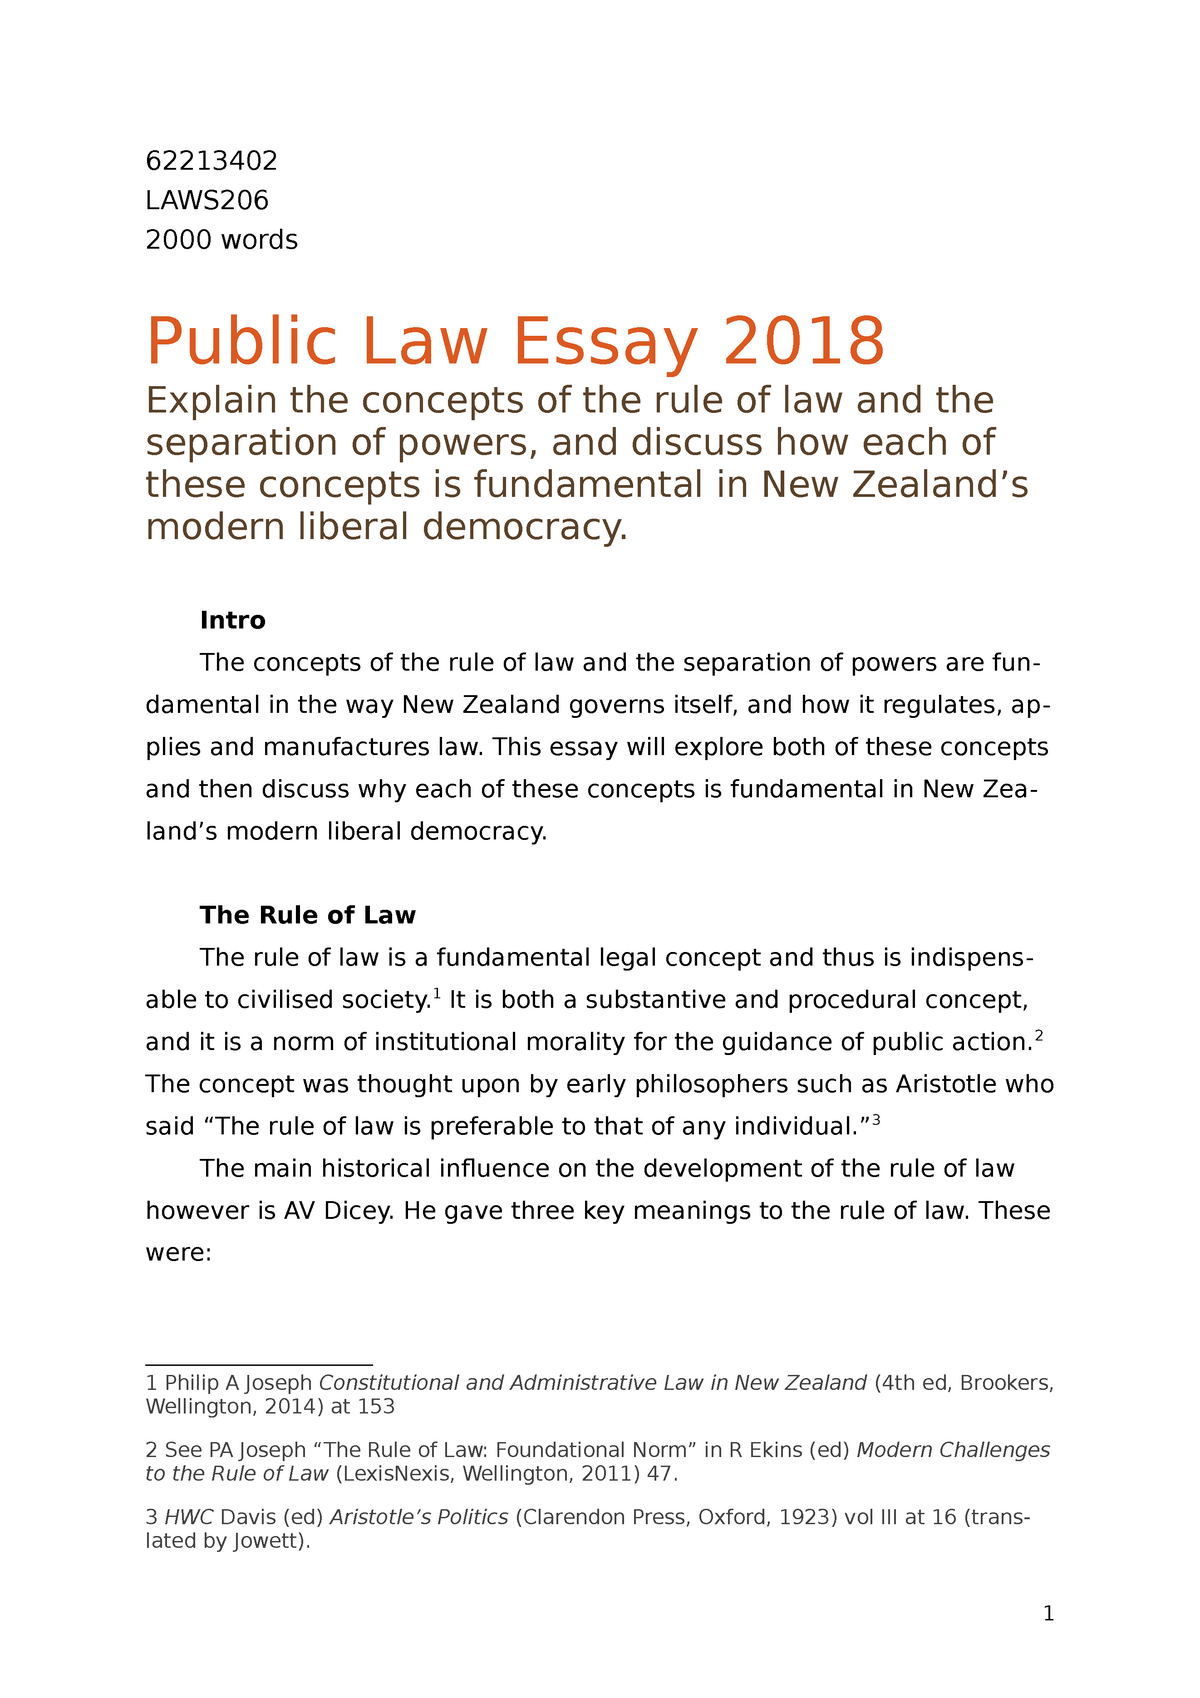 public health law essay